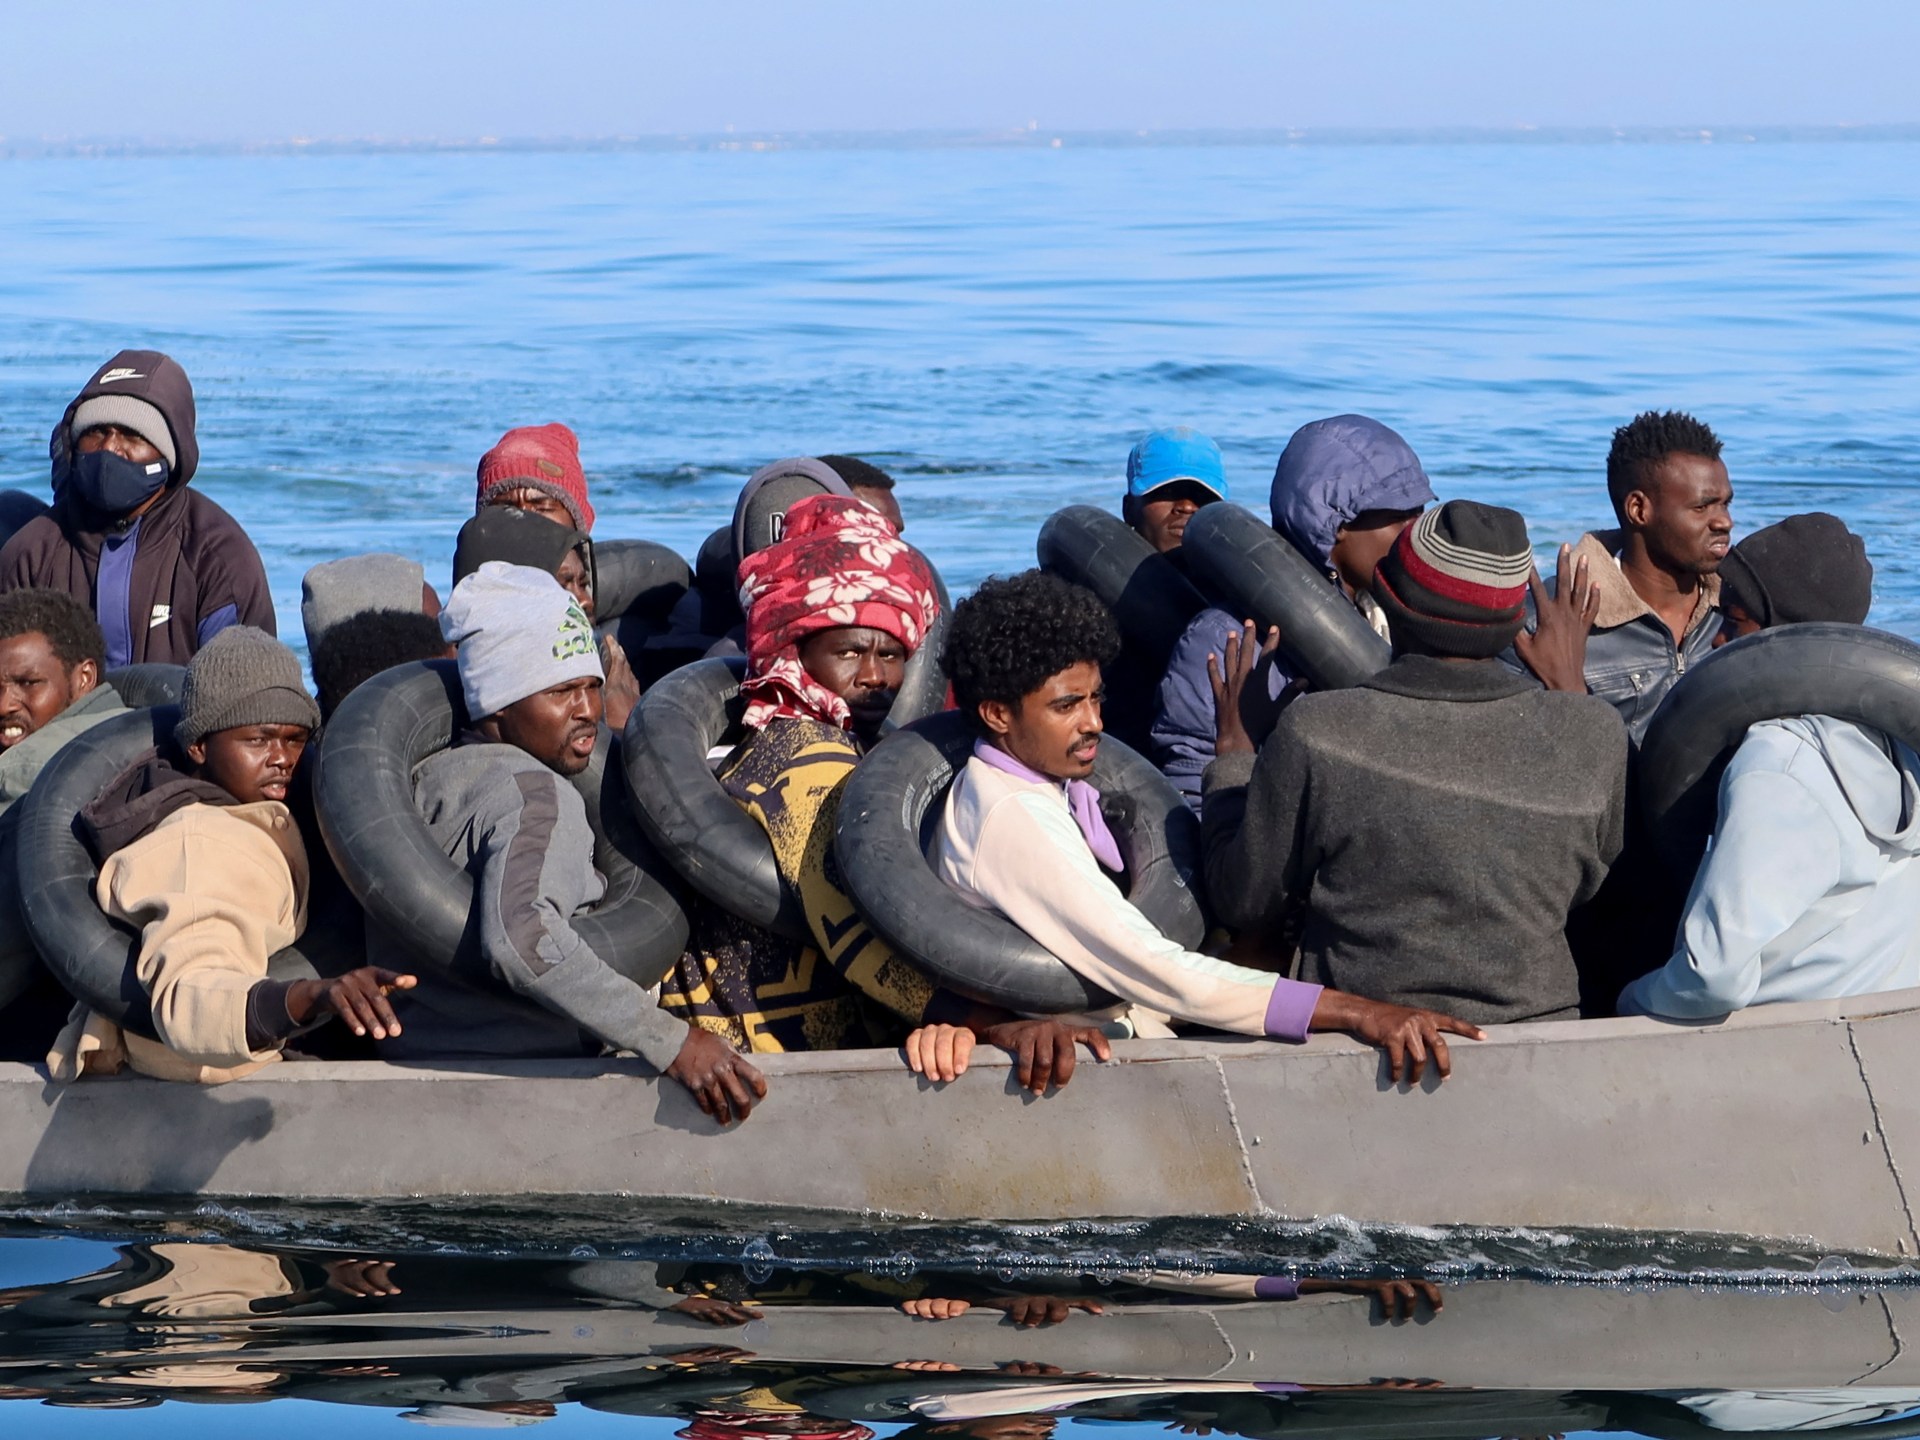 Il numero dei migranti raggiunge il record a Lampedusa, la capacità di accoglienza supera di dieci volte |  Notizie sui migranti